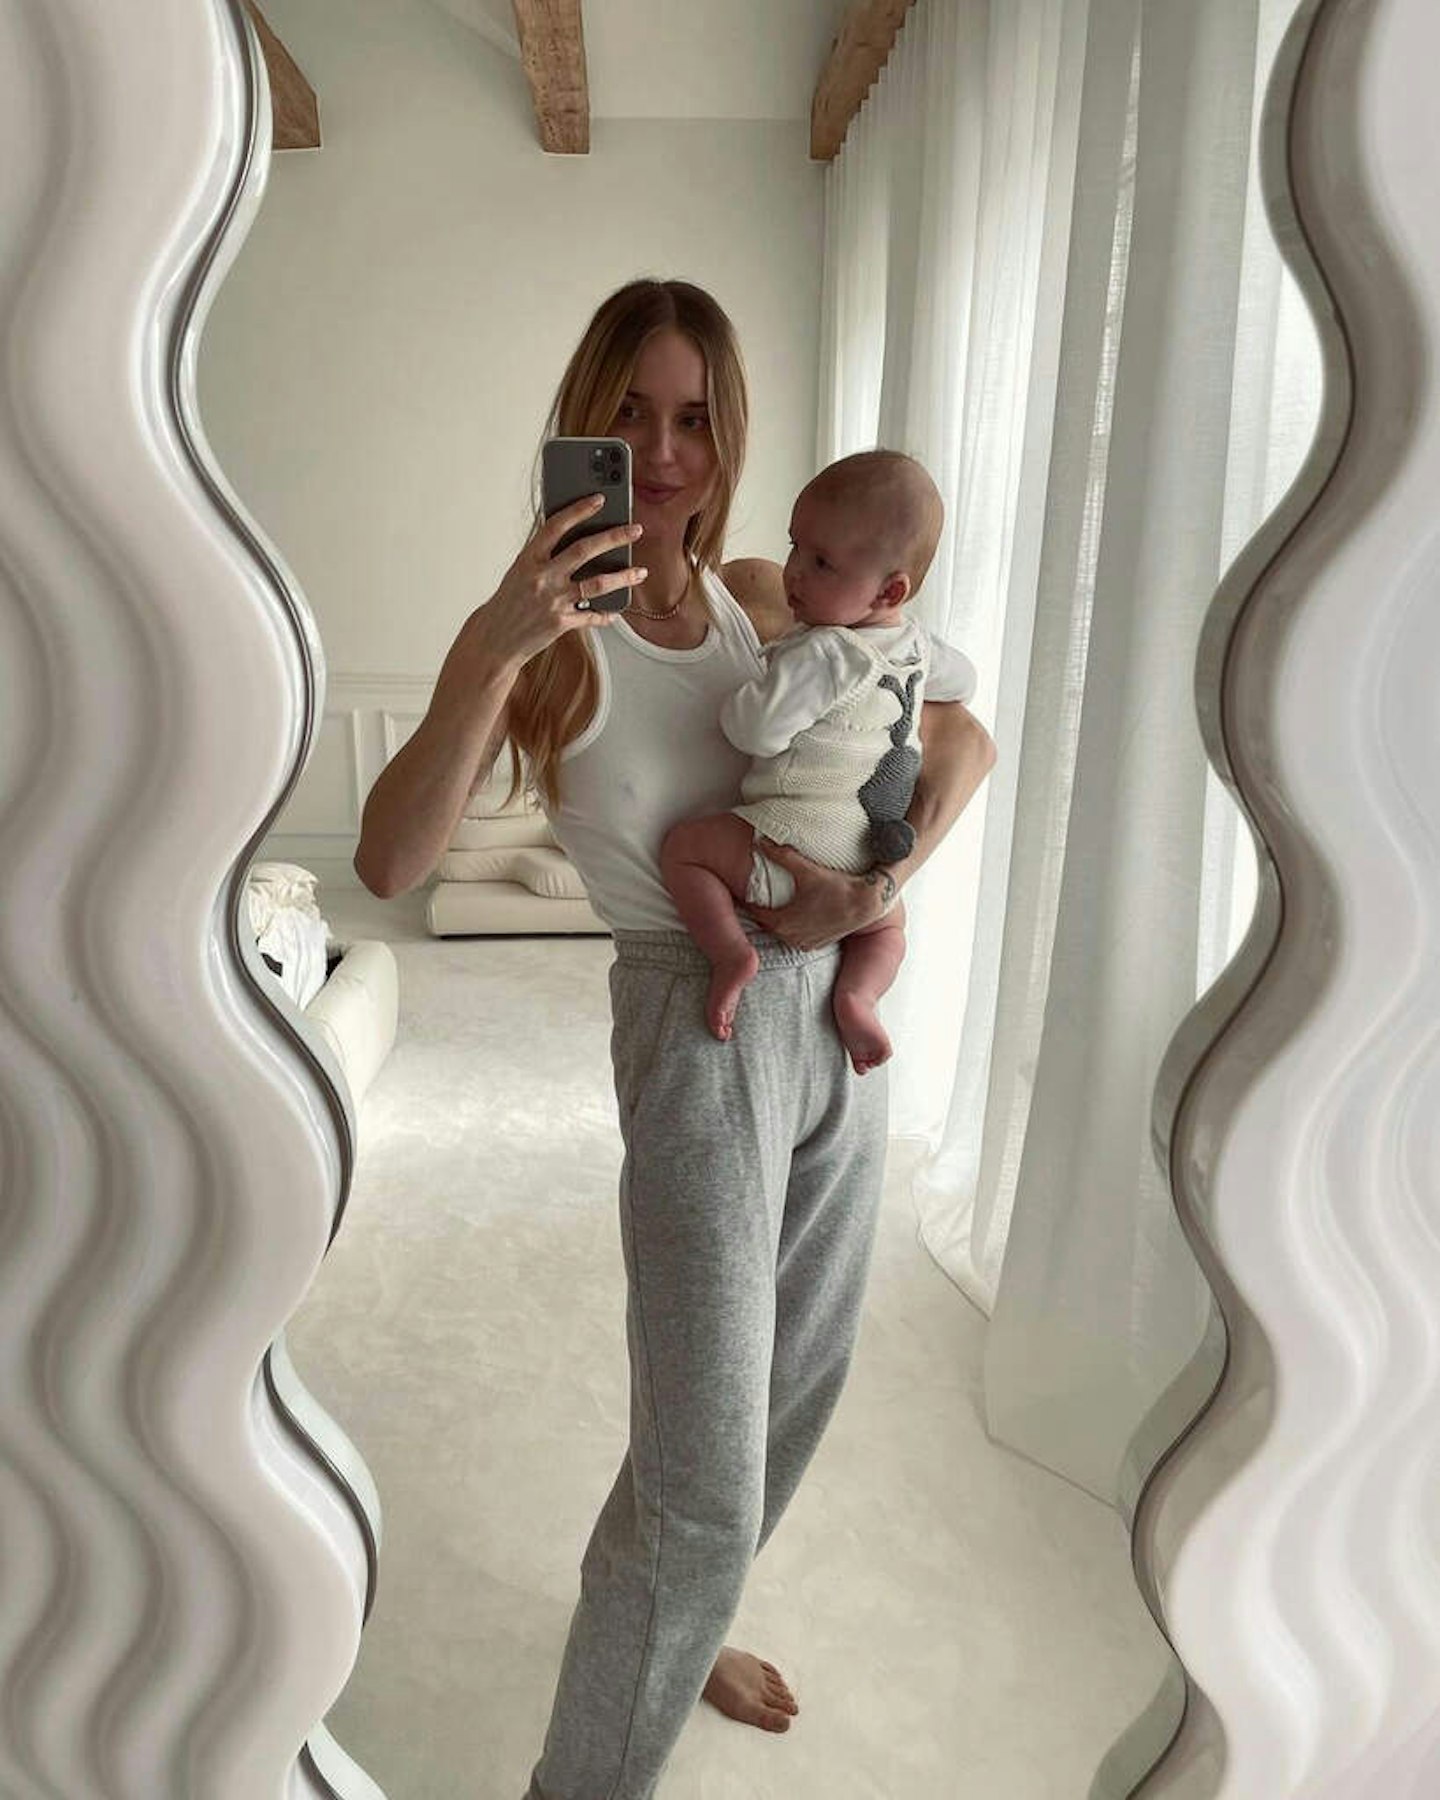 Pernille Teisbaek mirror selfie wiggly mirror